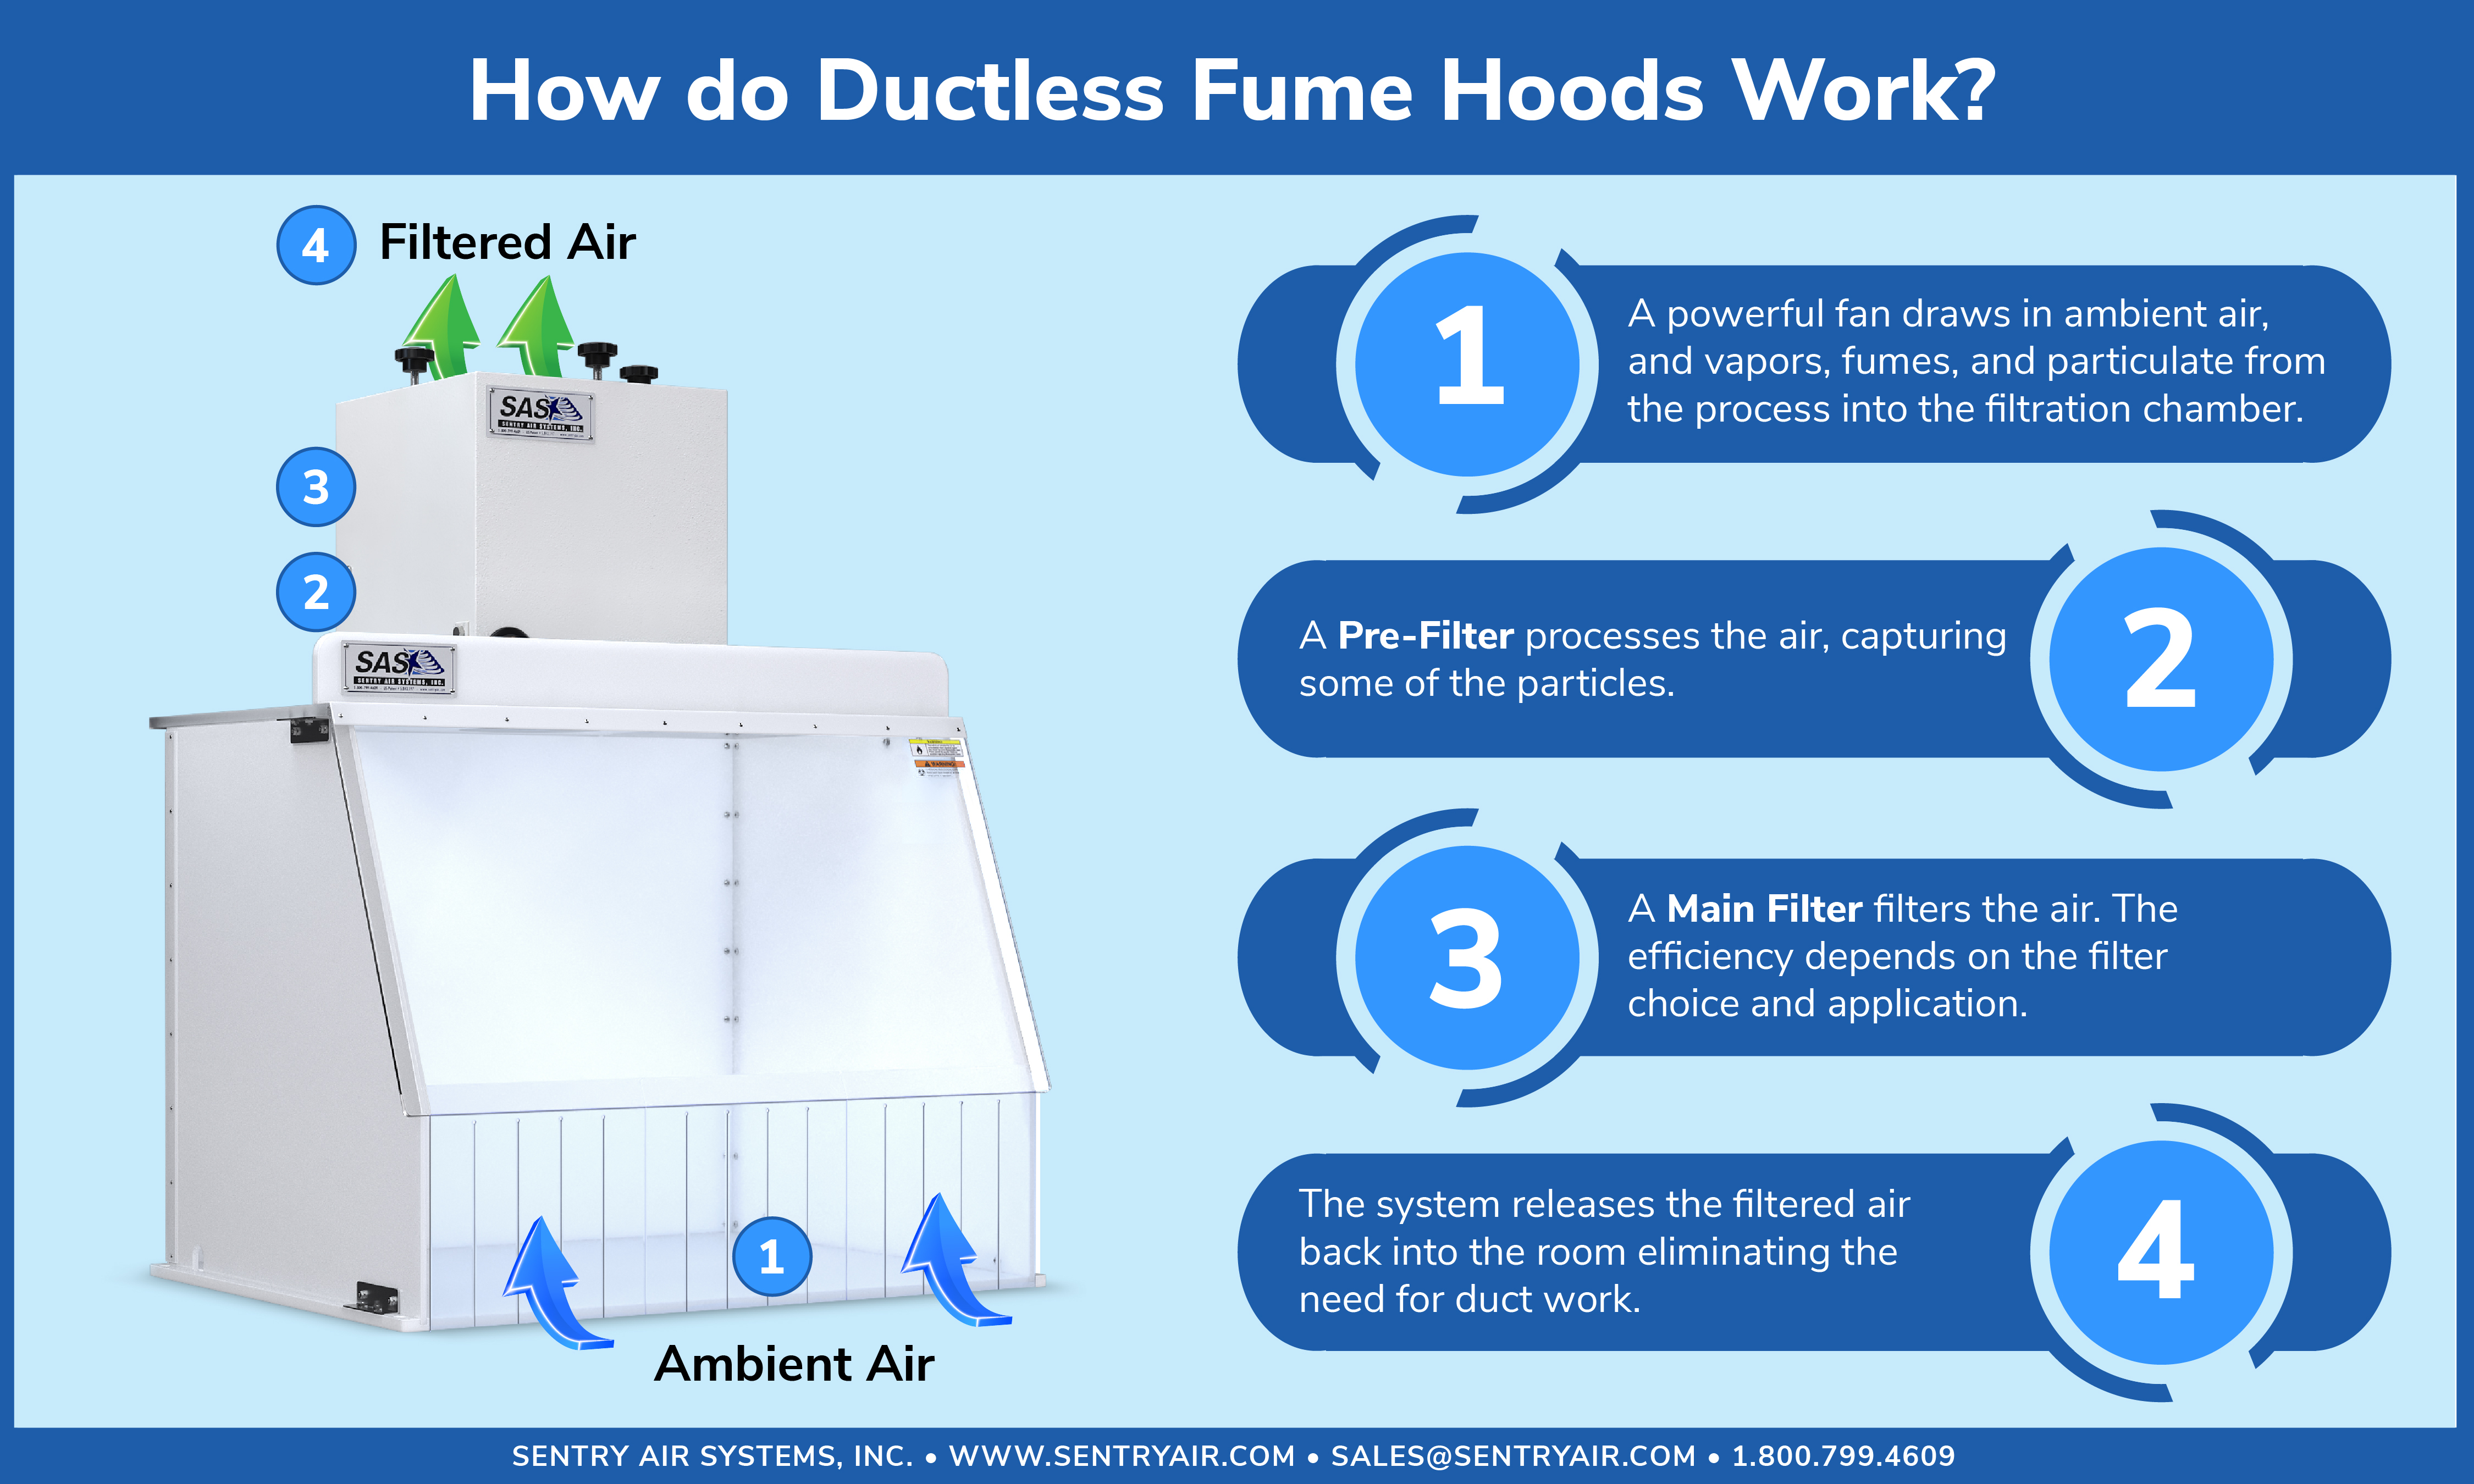 Ductless Fume Hood